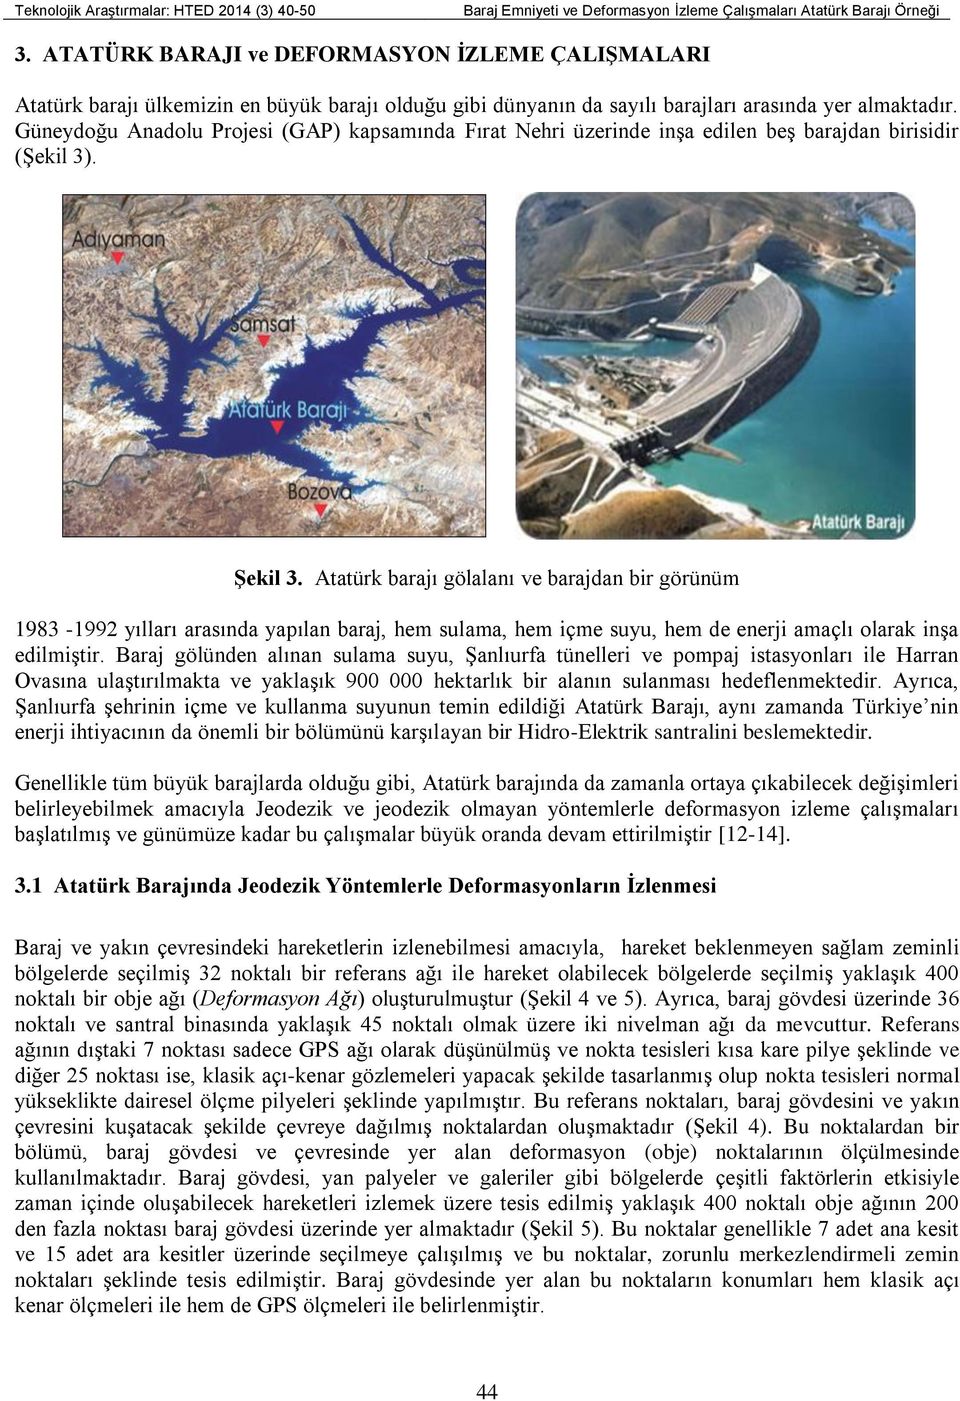 Güneydoğu Anadolu Projesi (GAP) kapsamında Fırat Nehri üzerinde inşa edilen beş barajdan birisidir (Şekil 3). Şekil 3.